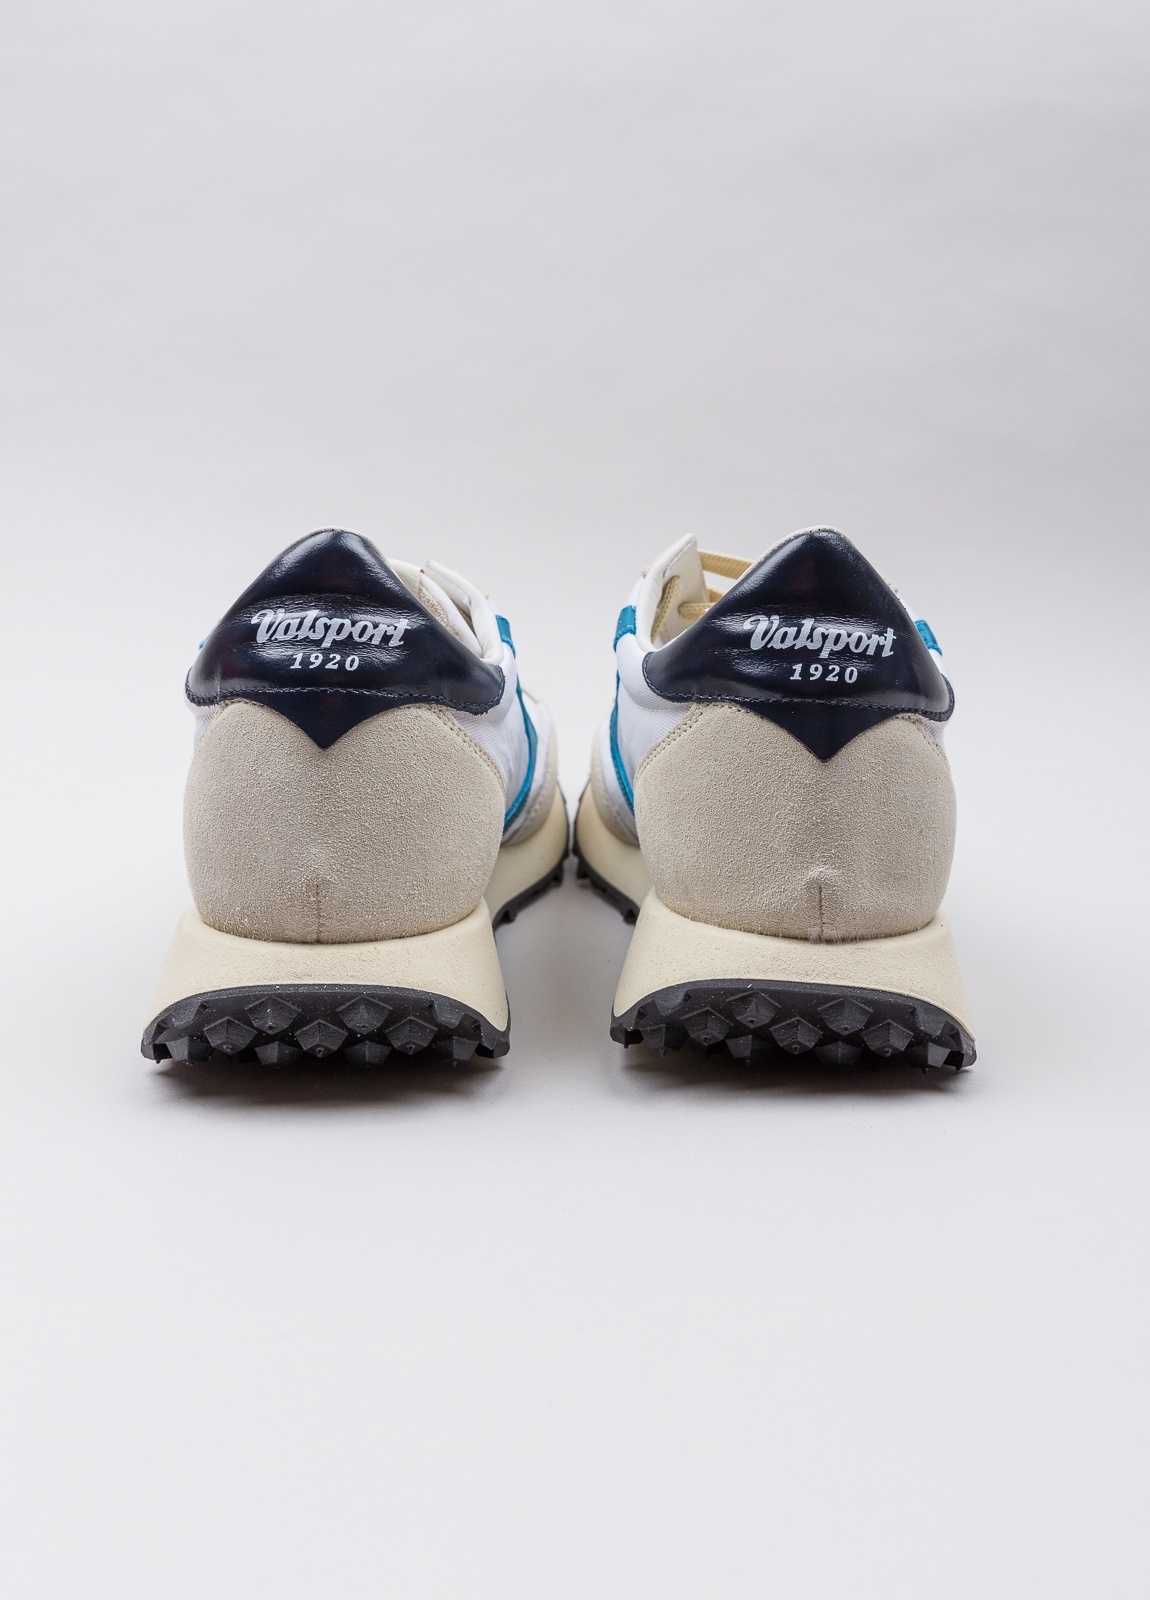 Sneakers VALSPORT blanca y beige con detalles azul y negro - Ítem3